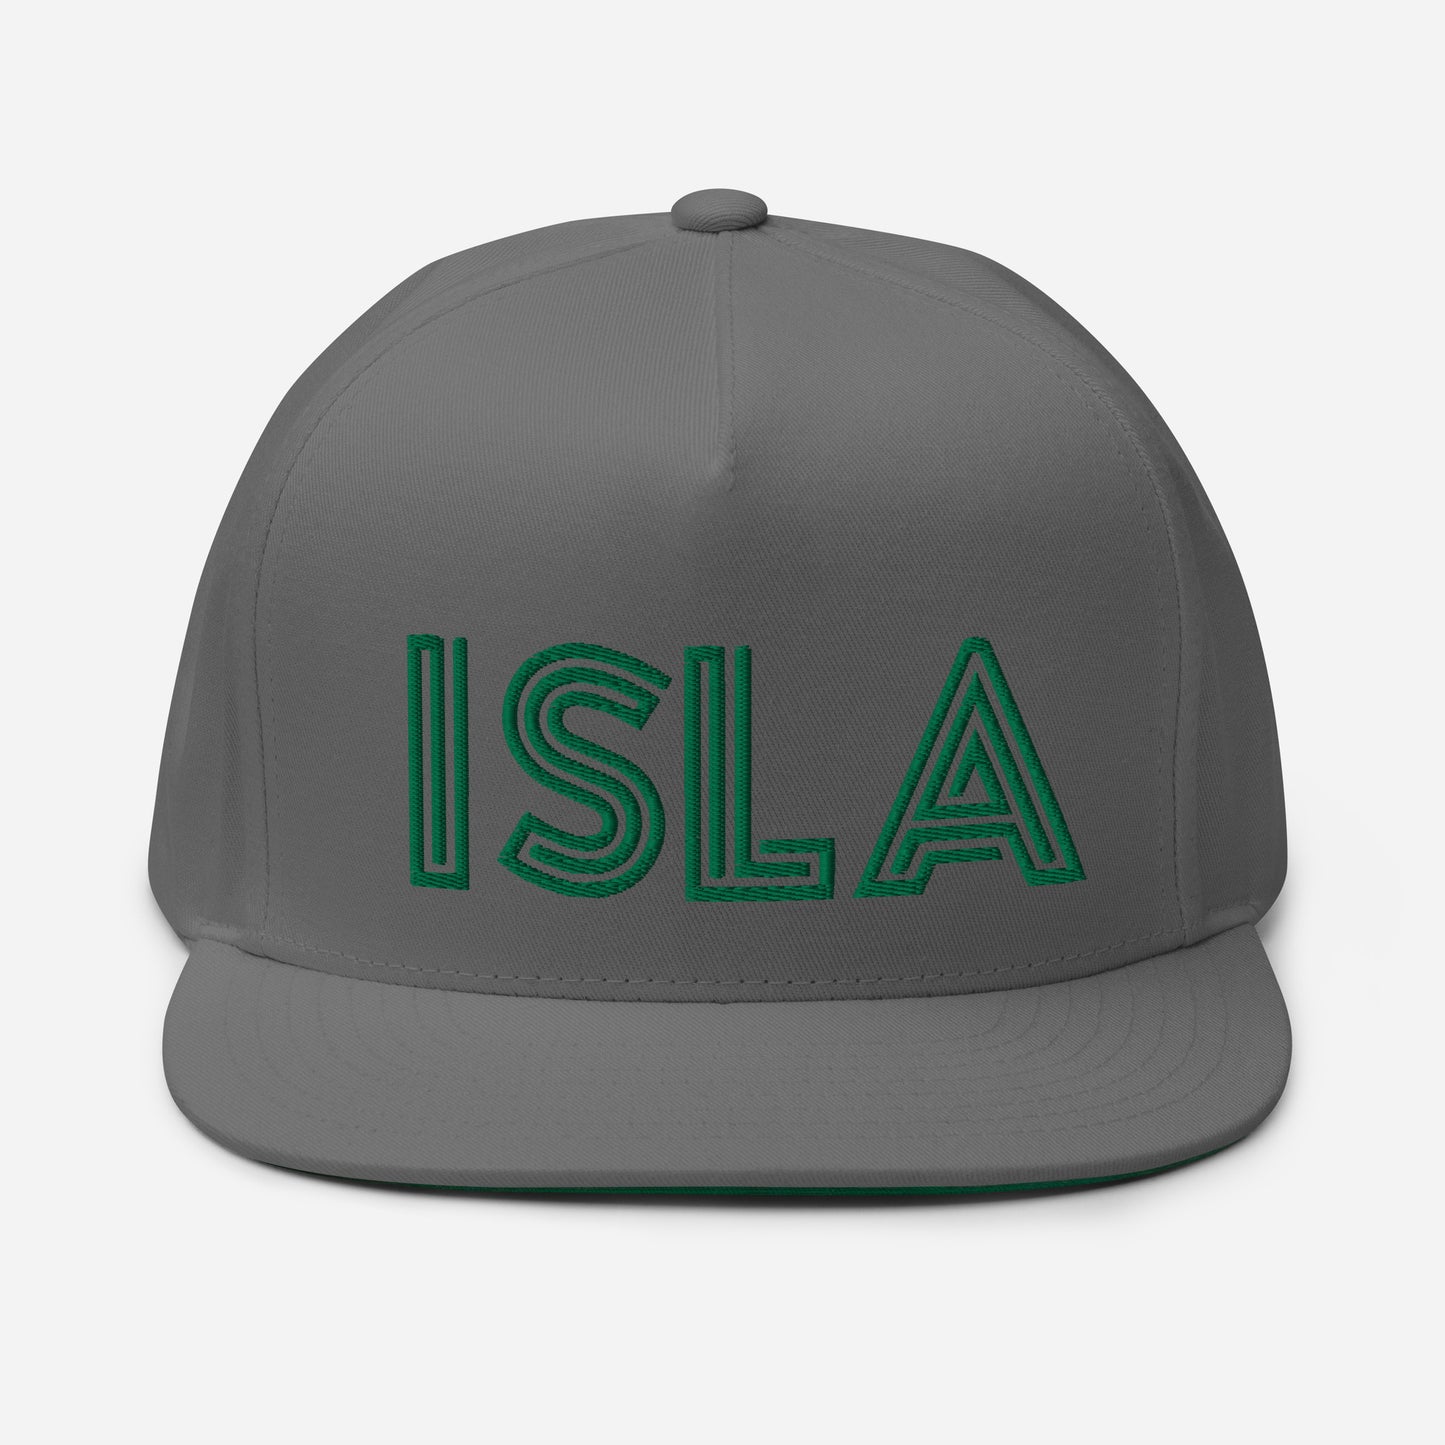 ISLA Flat Cap